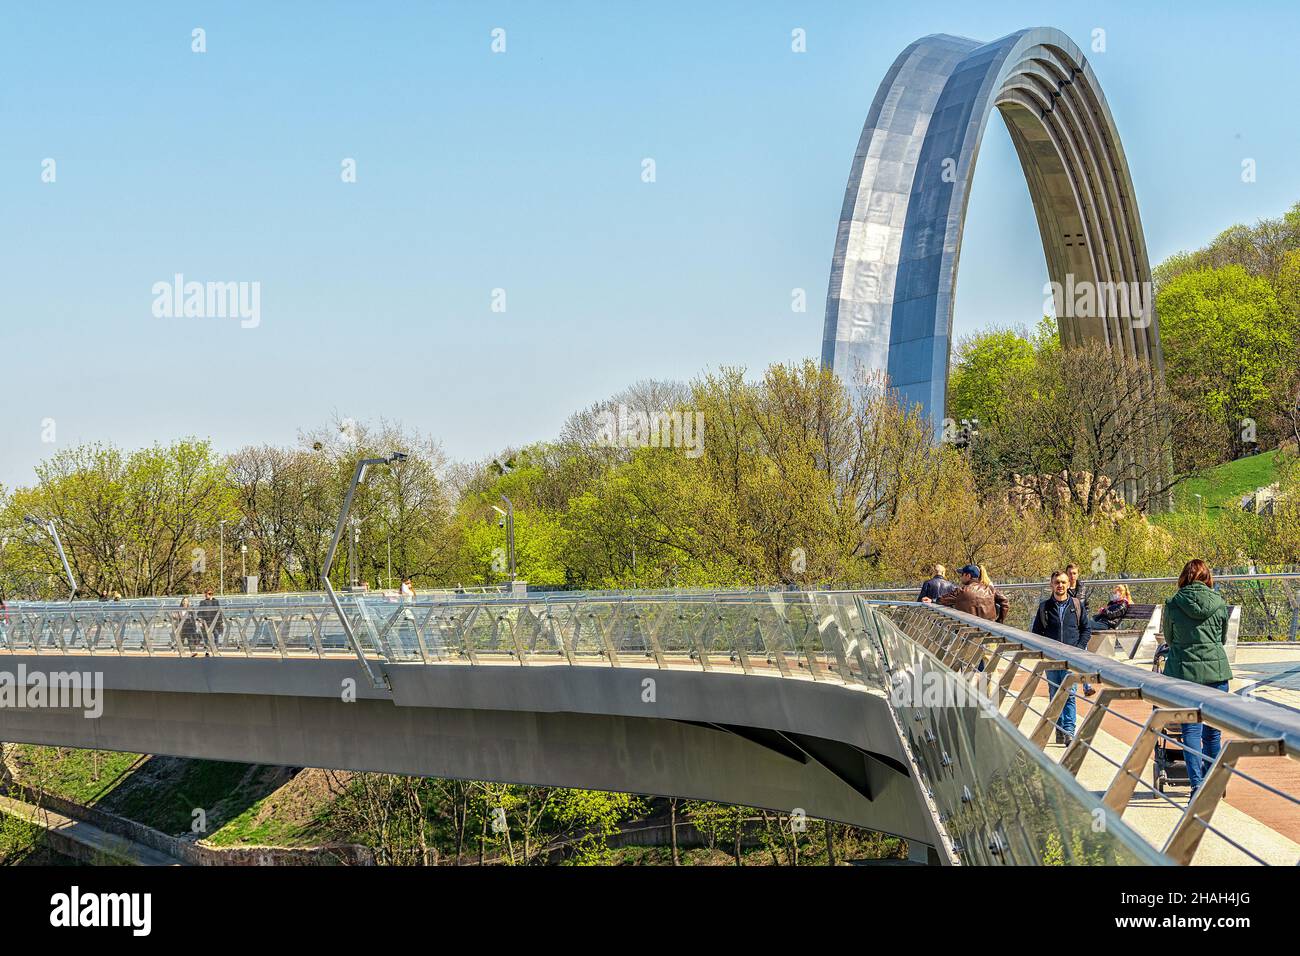 Kiew, Ukraine - 28. April 2021: Blick auf den Freundschaftsbogen und die neue Fußgängerbrücke, die mit dem Sankt-Wolodymyr-Hügel verbunden ist. Stockfoto